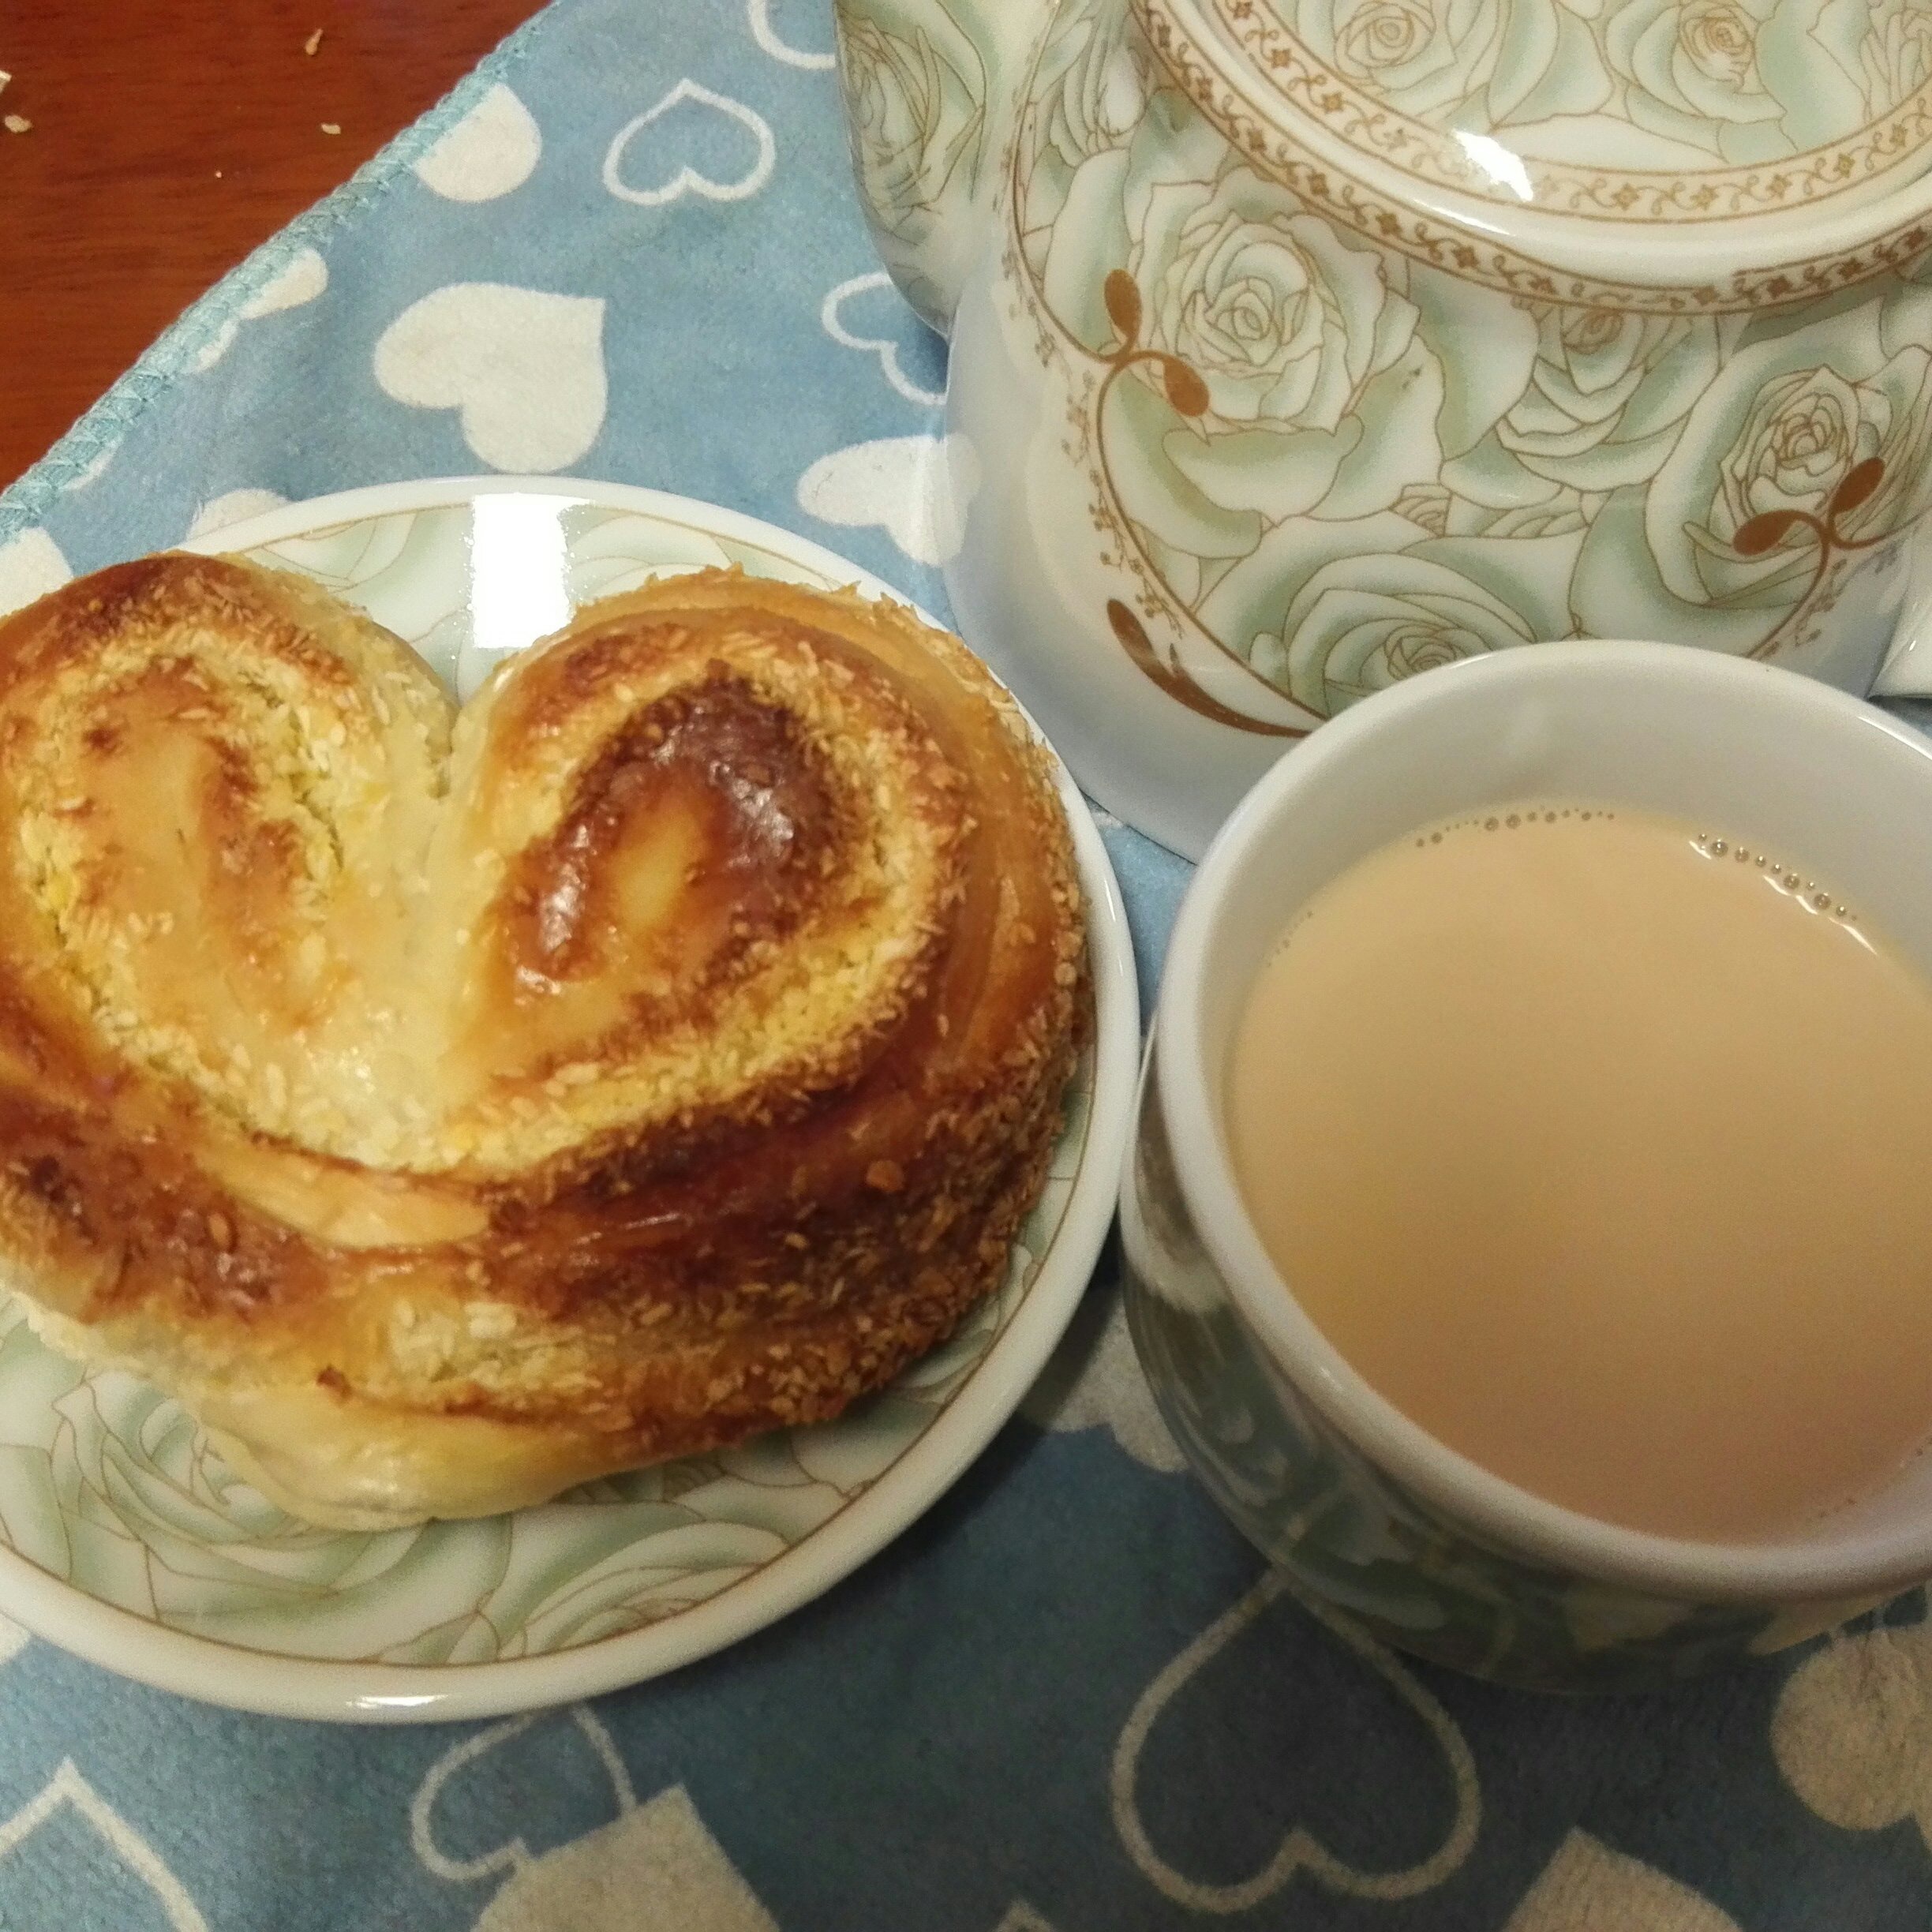 心形椰蓉面包+香草奶茶